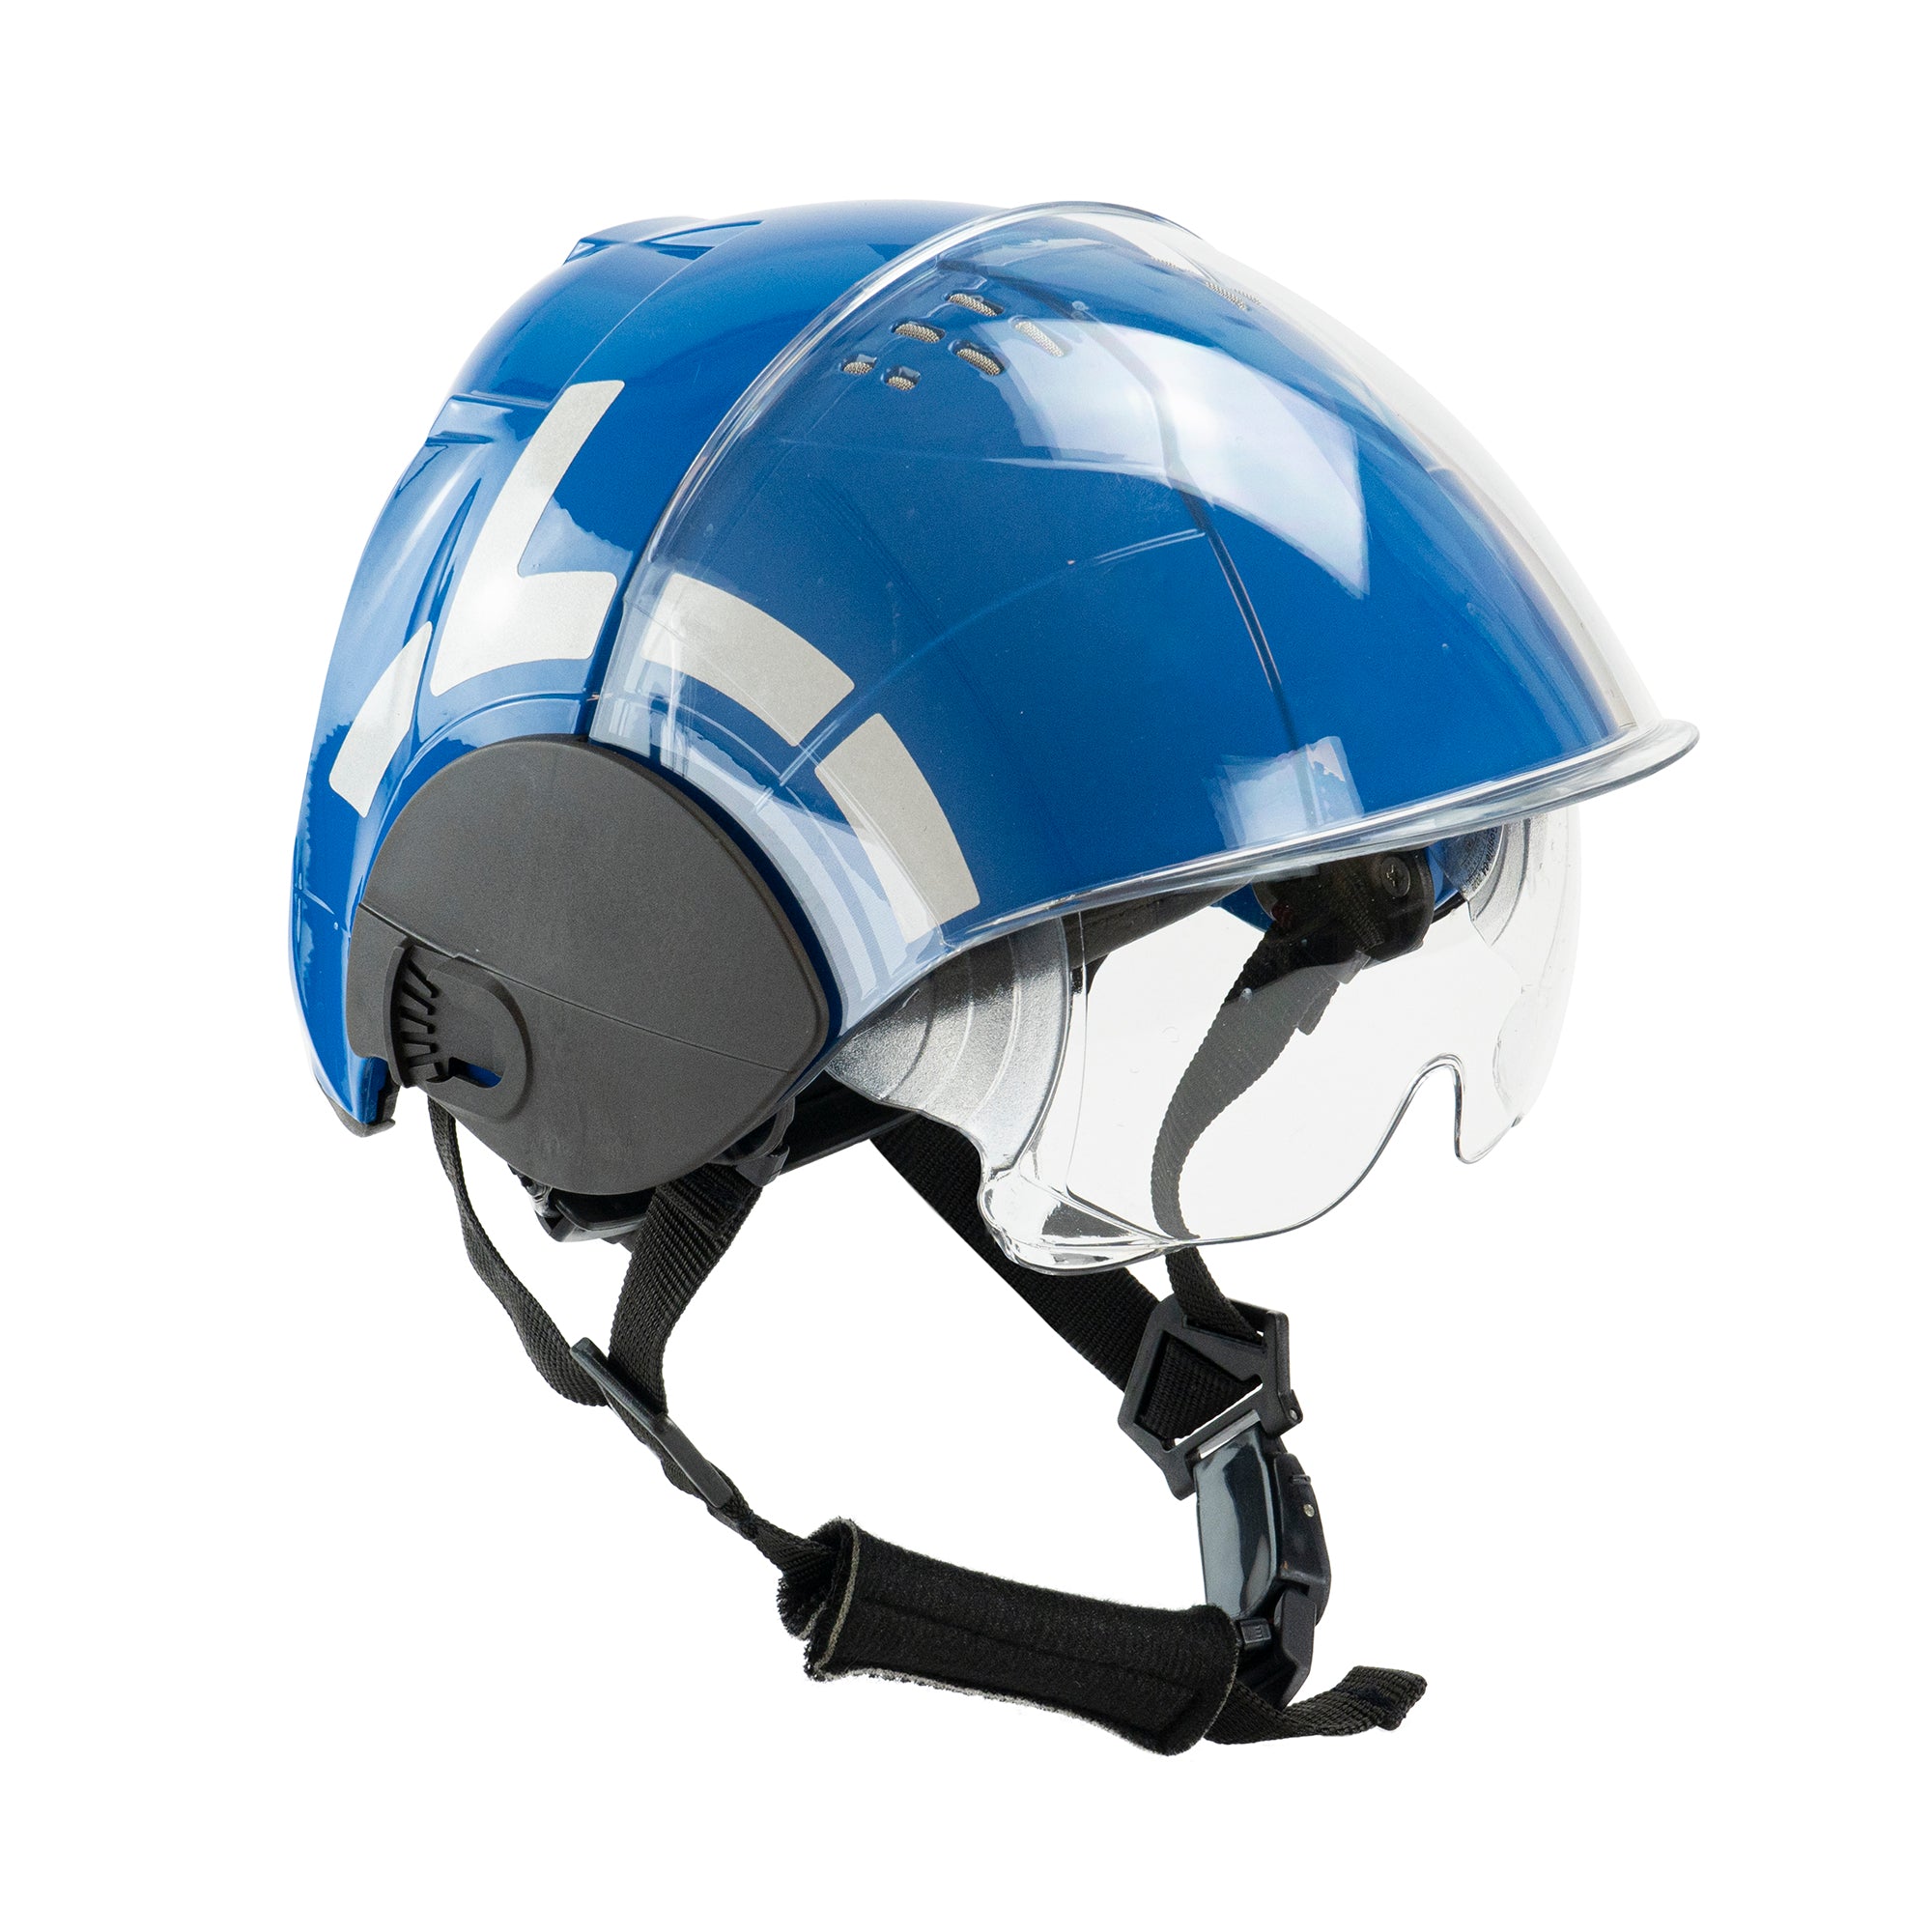 WRS - Technical rescue helmet WRS – International